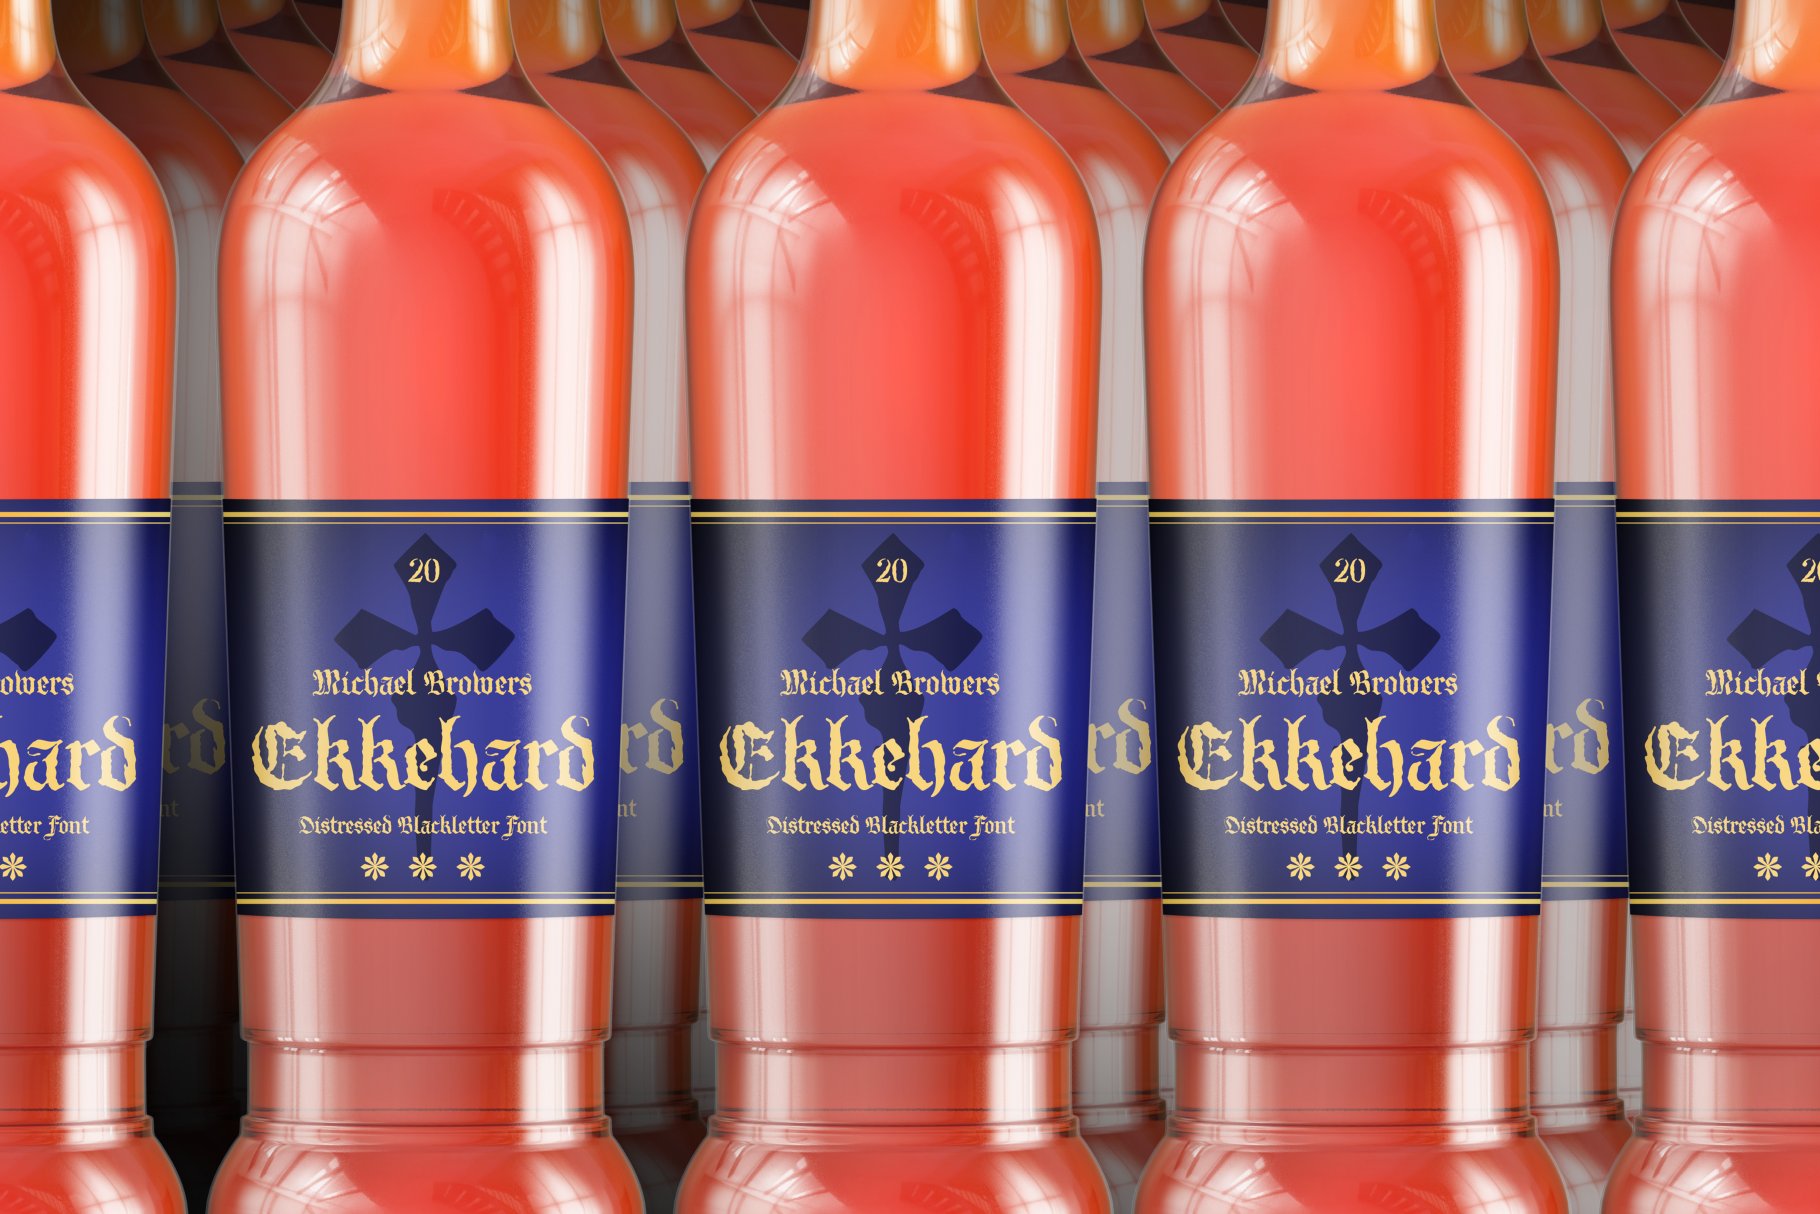 ekkehard bottles cm 415